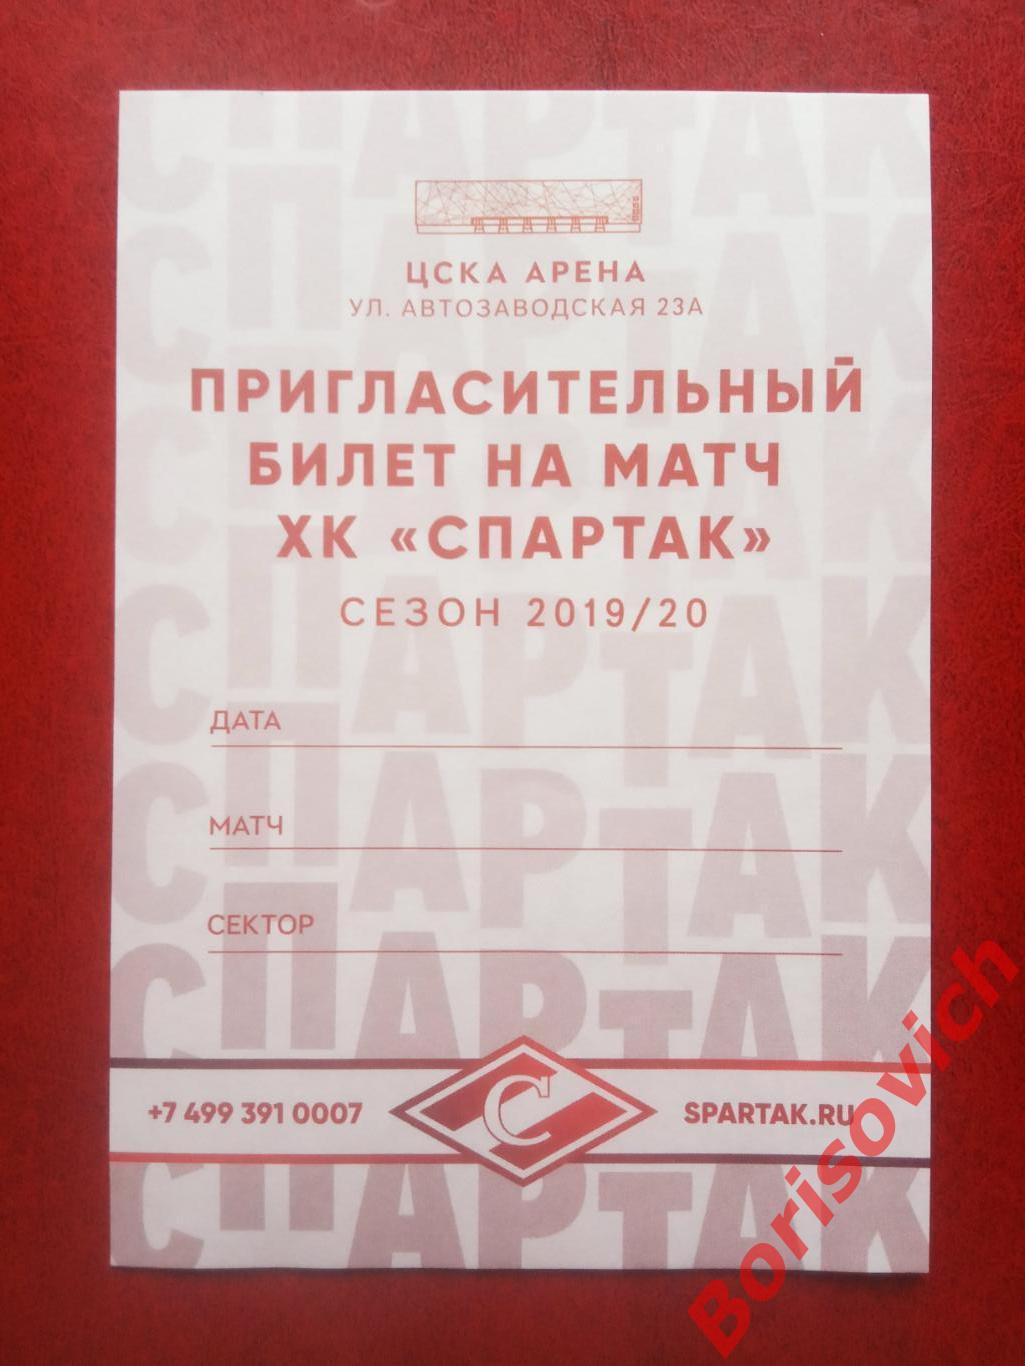 Пригласительный билет на матч ХК Спартак Москва Сезон 2019/2020. 21